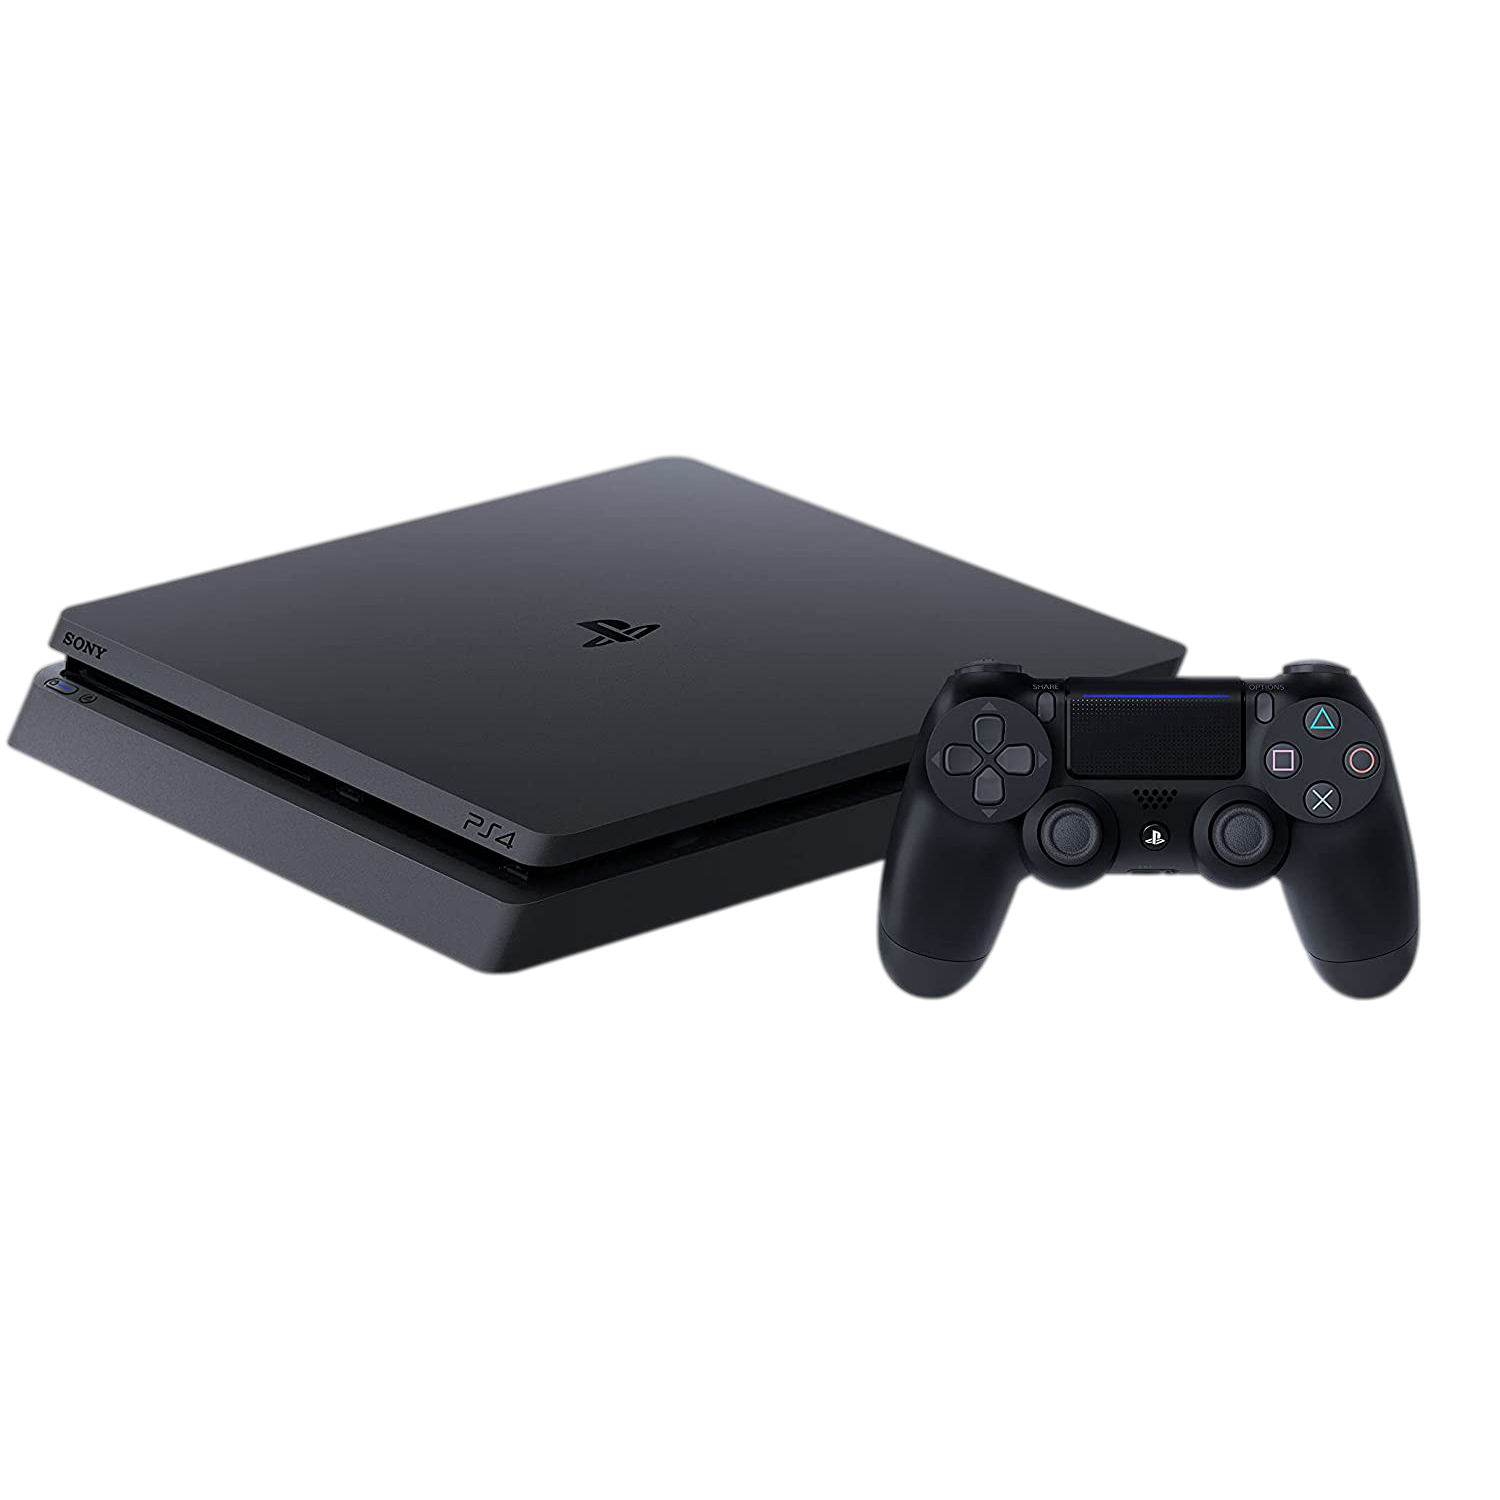 Sony-PlayStation-4-Slim-Console-500GB_cc0a3a0e-80a0-44d8-ae8b-39d3c0db4bb0